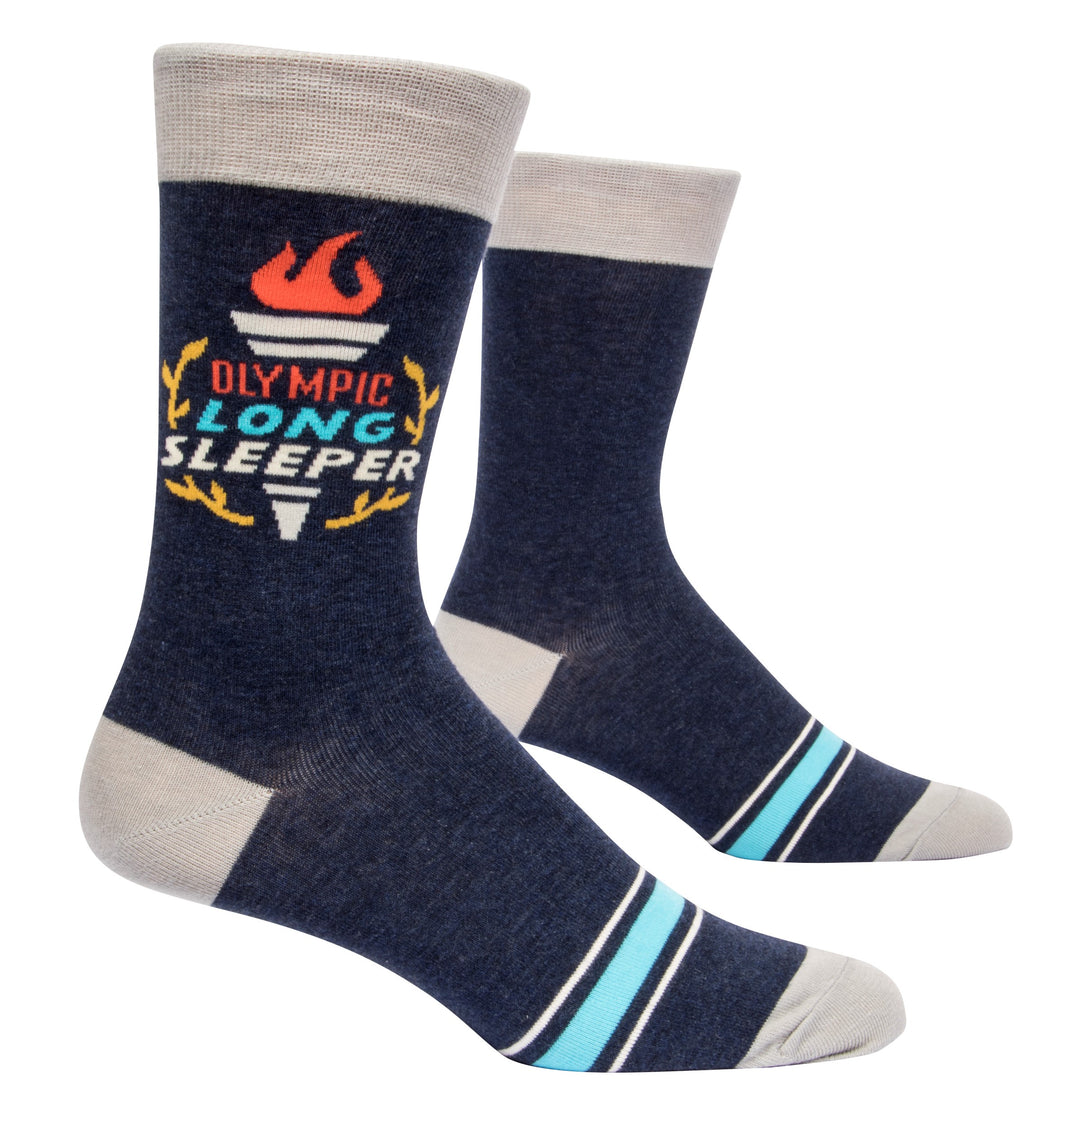 BlueQ - Men's Socks - Olympic Long Sleeper